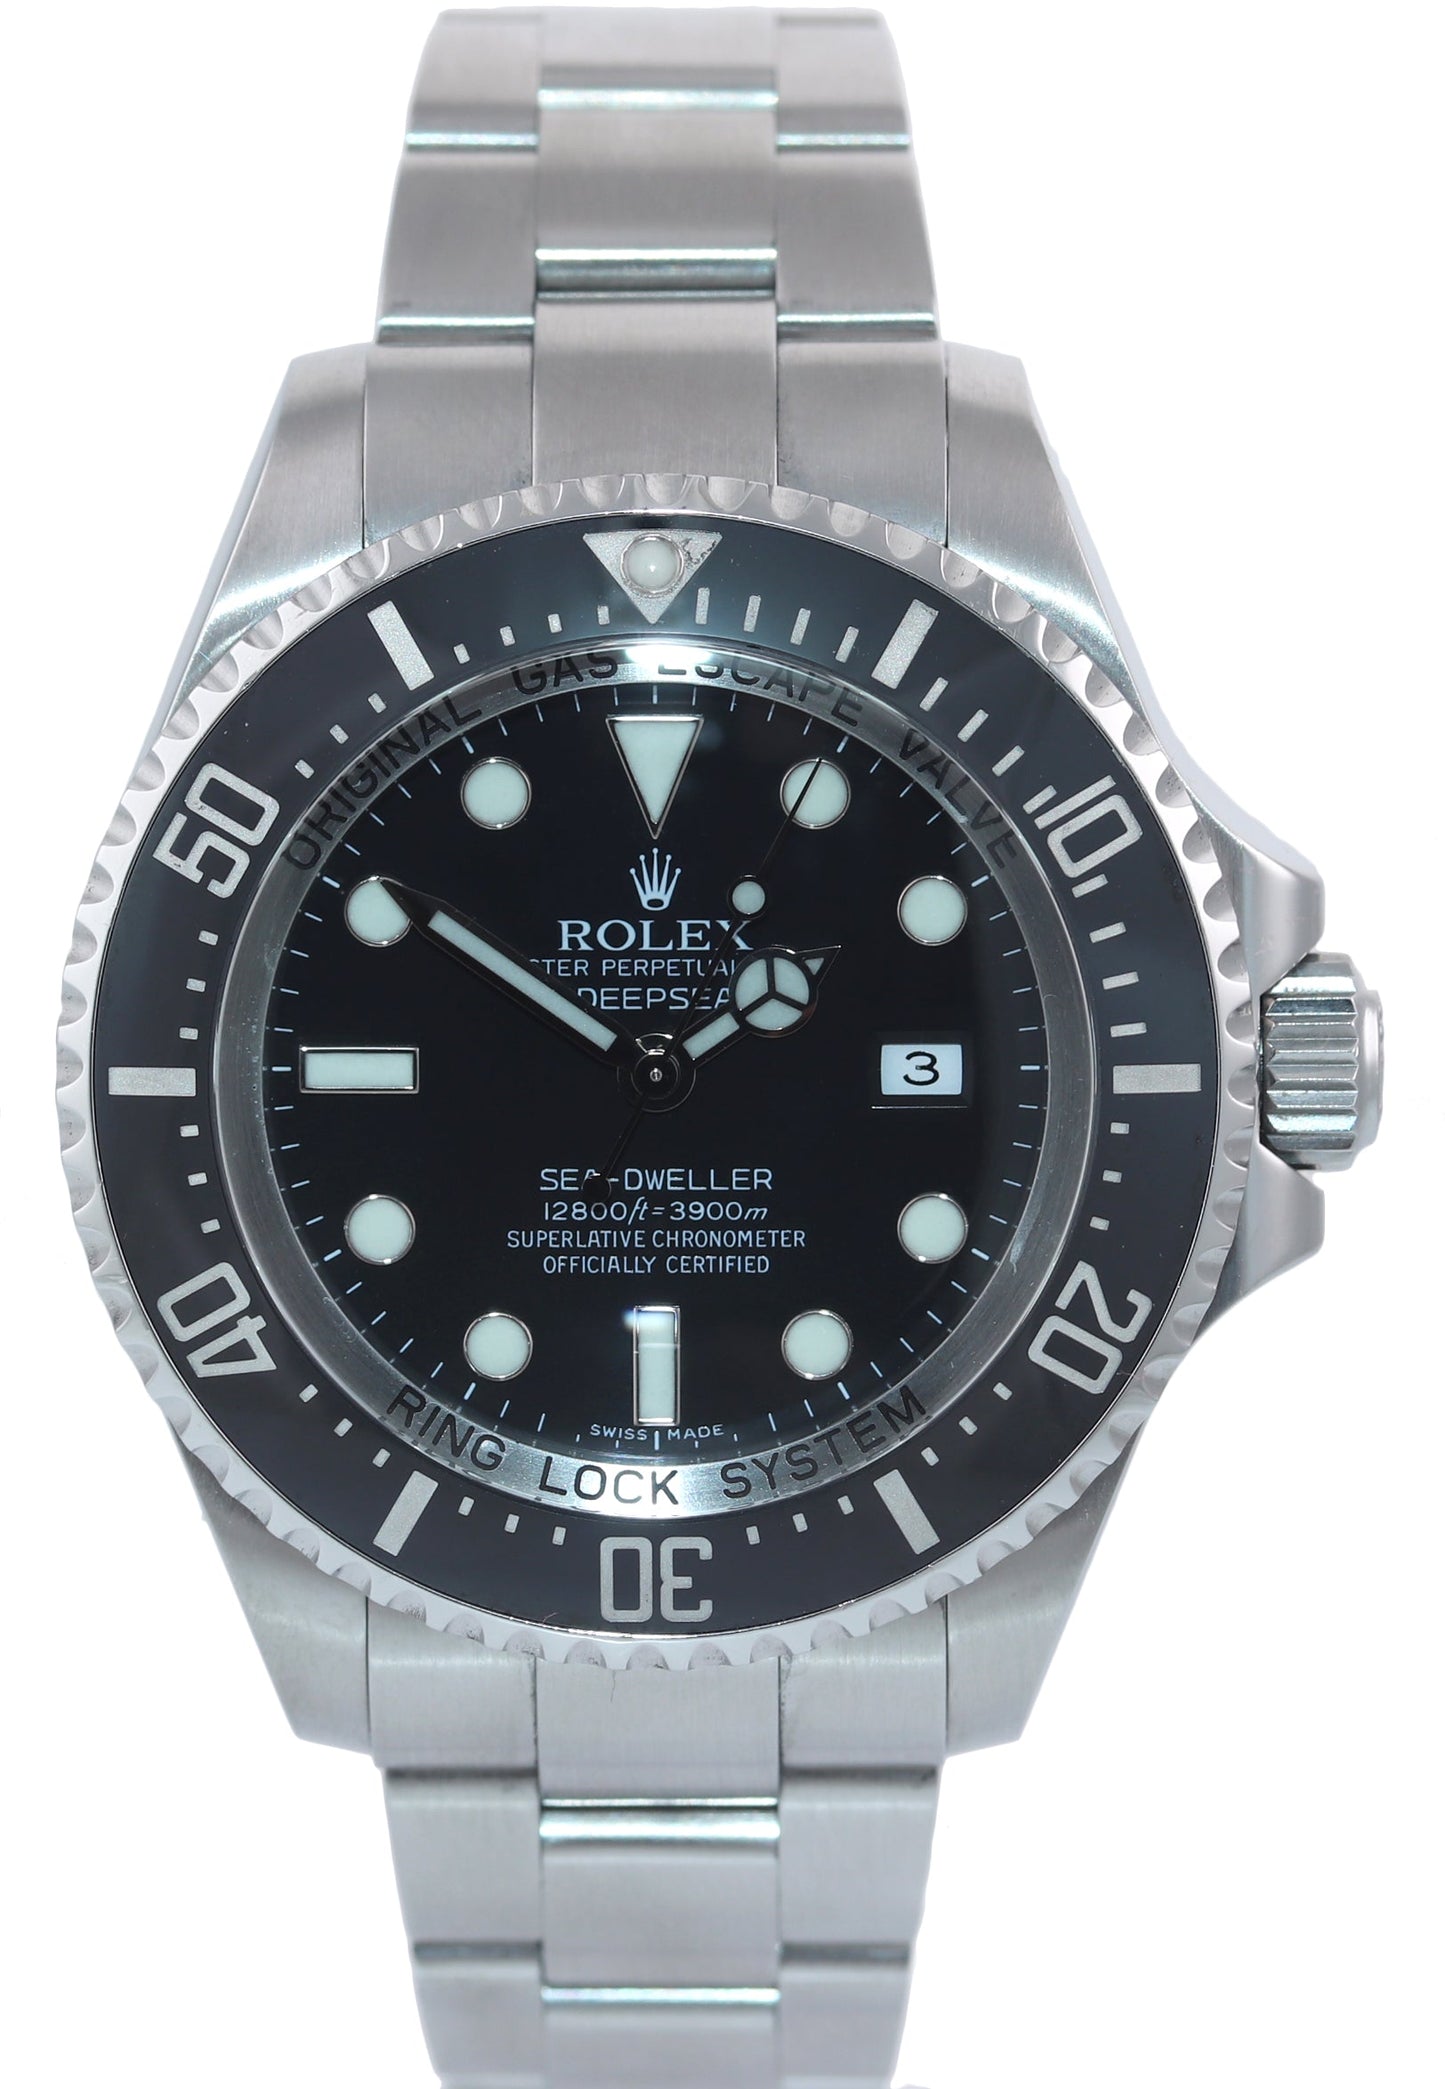 MINT 2013 PAPERS Rolex Sea-Dweller DEEPSEA 116660 Steel 44mm Black Ceramic Watch